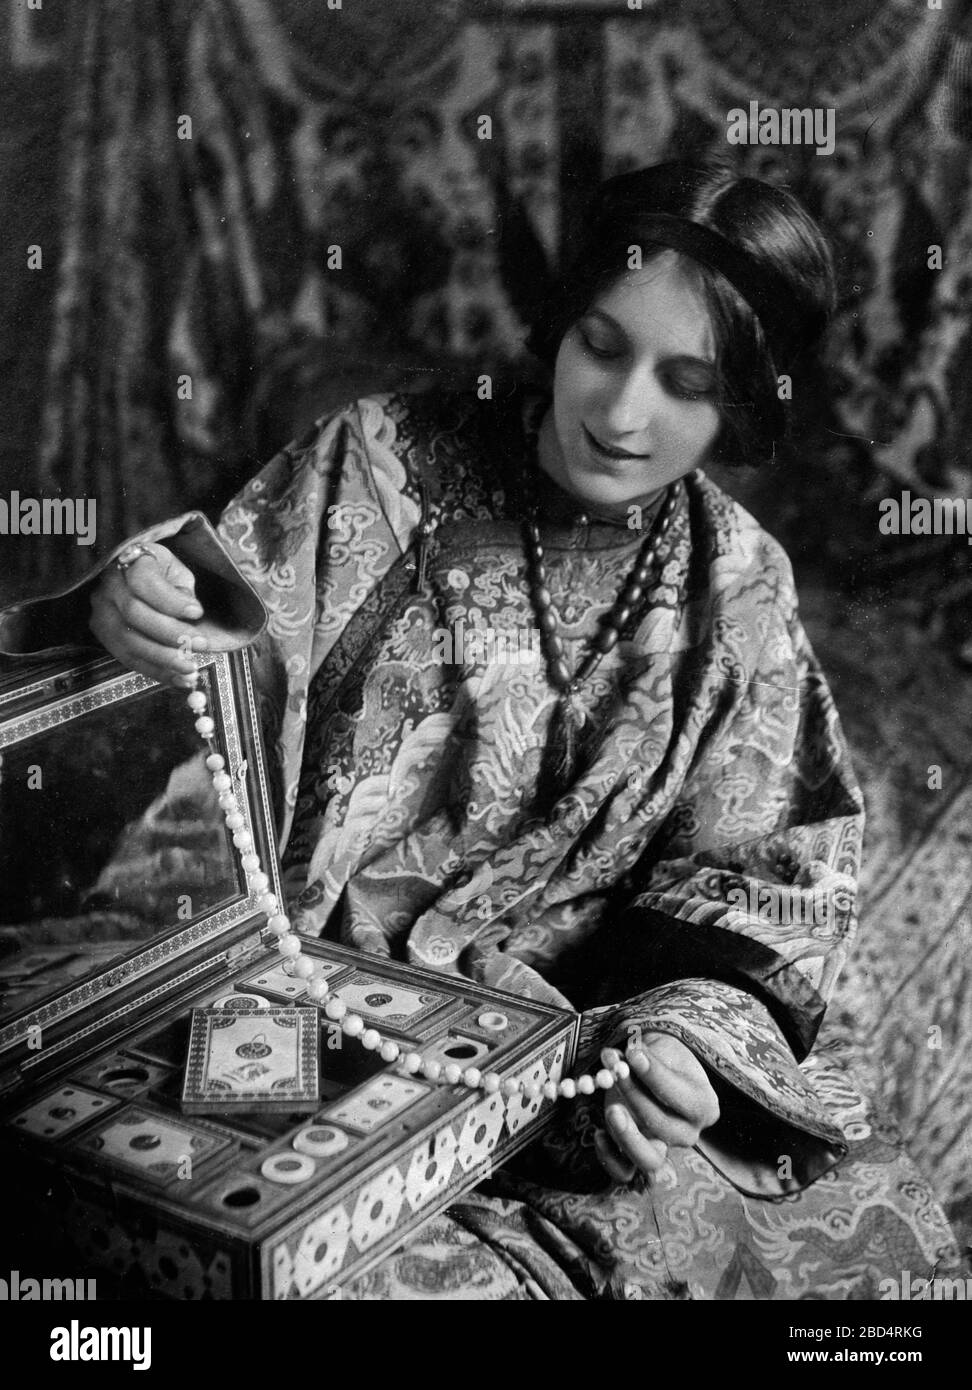 Attrice francese, ballerino, e star del cinema silenzioso Stacia Napierkowska ca. 1910-1915 Foto Stock